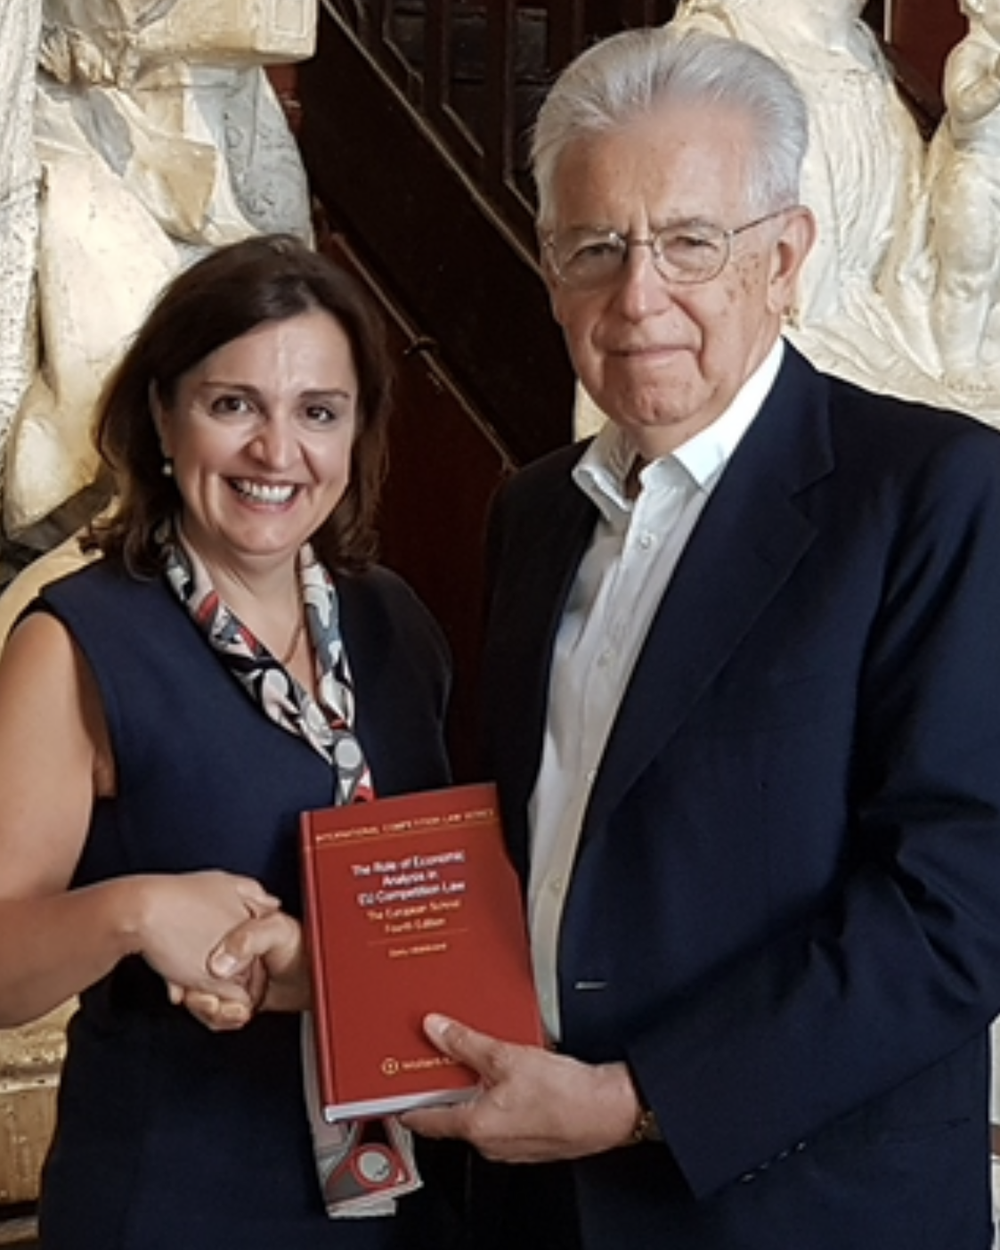 Professor Hildebrand bei der Veröffentlichung der vierten Edition mit dem ehemaligen EU-Kommissar und Premierminister von Italien Mario Monti